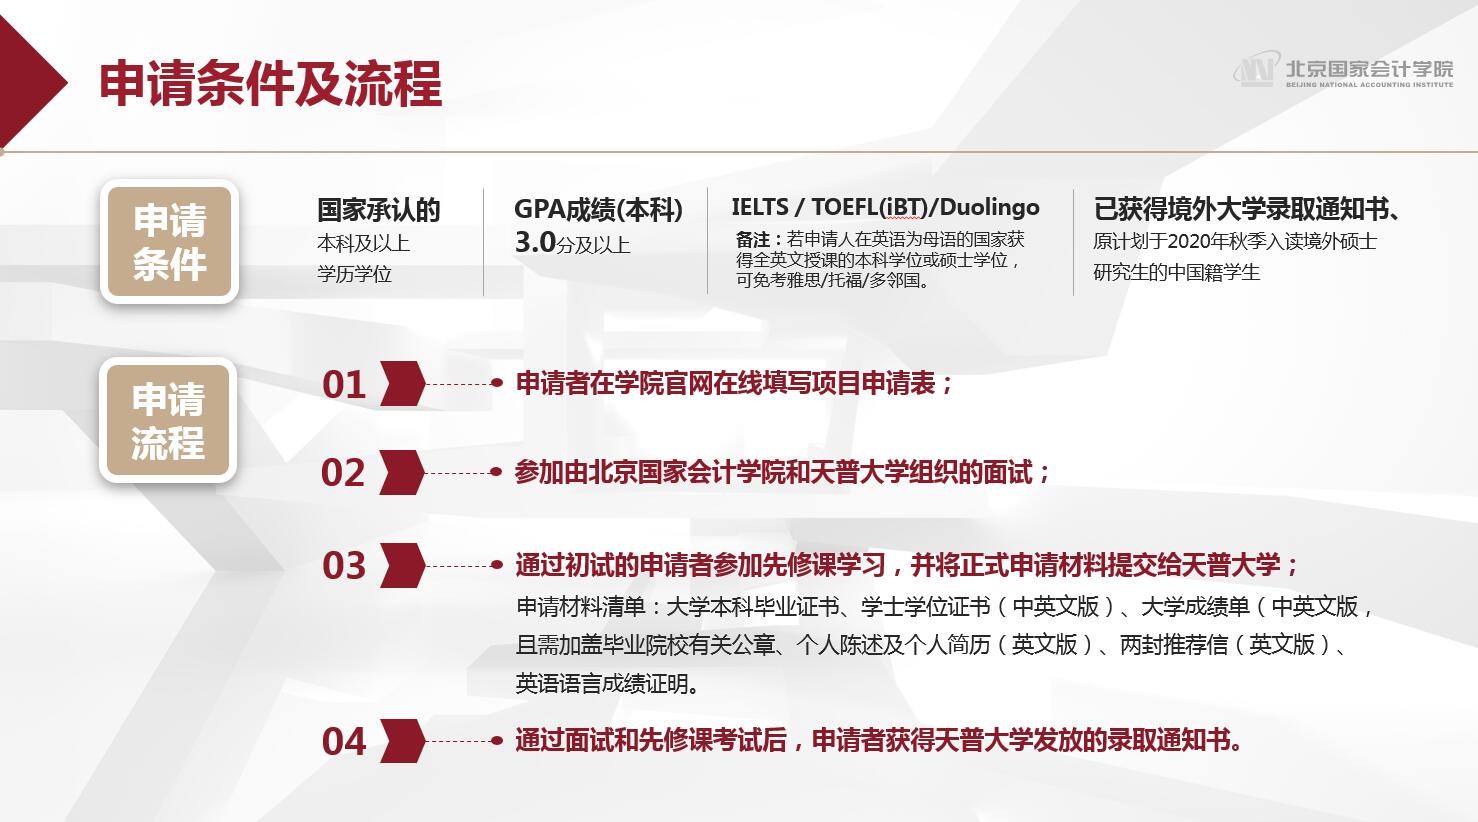 北京国家会计学院—美国天普大学IT审计与网络安全（ITACS）硕士研究生招生简章 (第四期班新增招生名额)